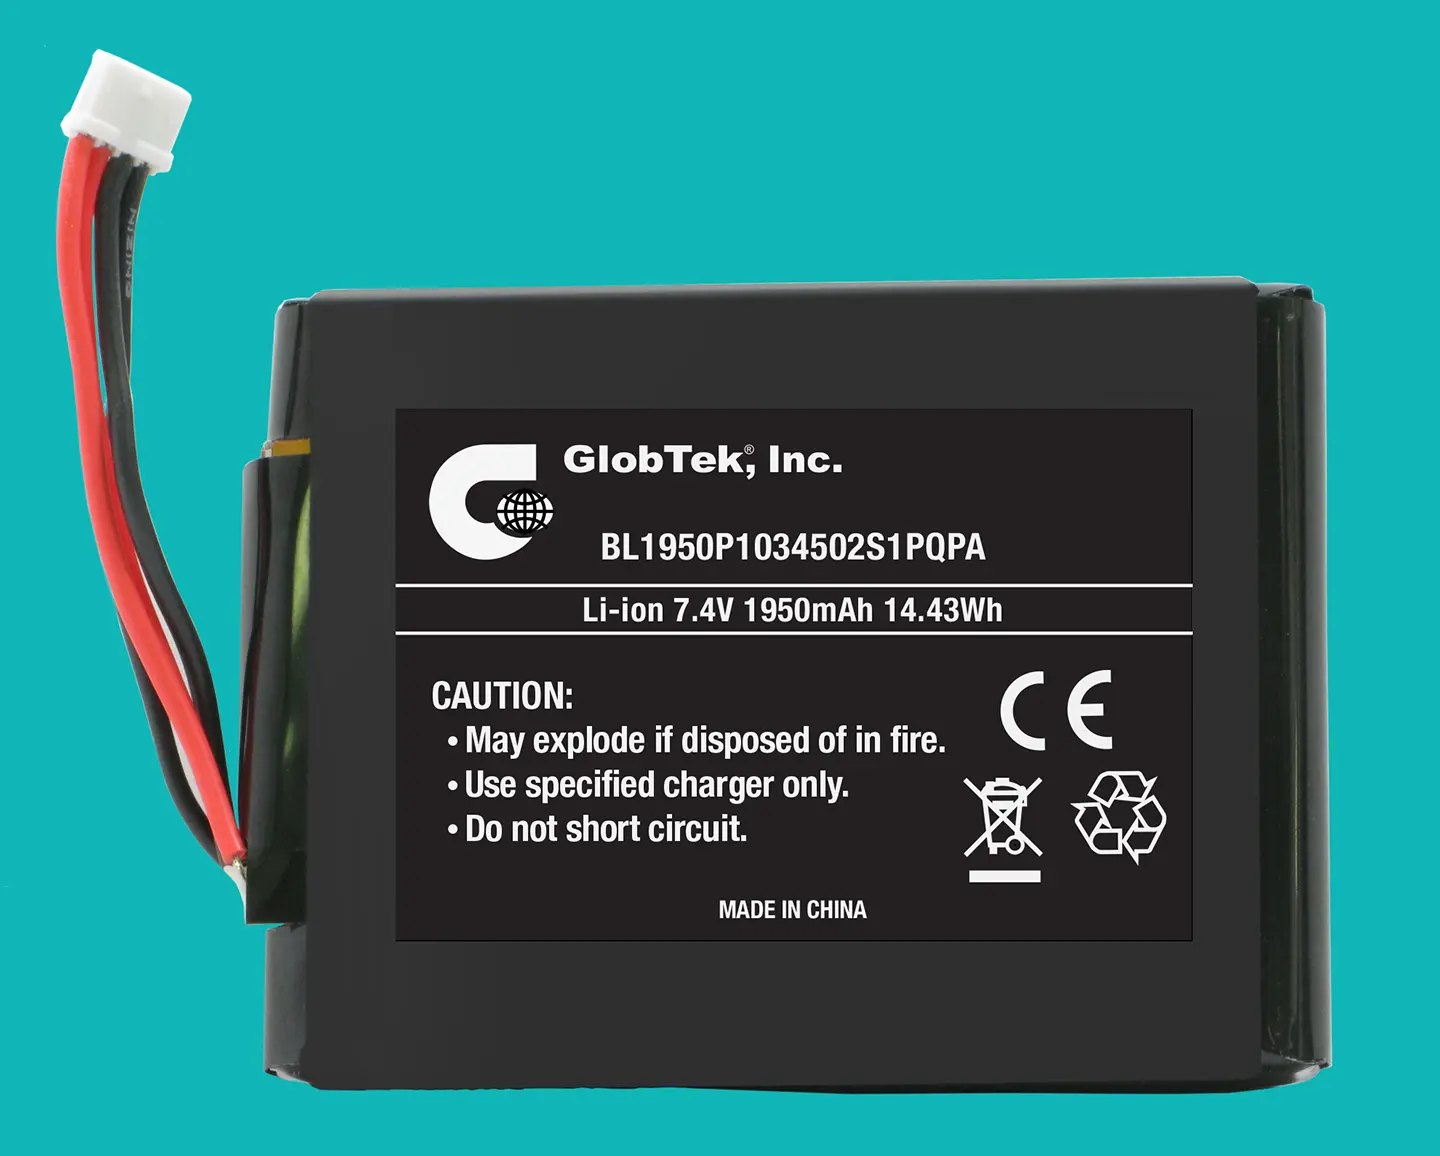 BL1950P1034502S1PQPA paquete de baterías de GlobTek en Configuración de 2S1P representa más reciente adición a la robusta de alta capacidad de Li-Ion de la familia / prismático batería con aprobación celula de UL 1642 y una marca CE que se ajuste a 2004/108 compatibilidad / CE electromagnética, incluyendo EN61000-6-1: 2007 , EN61000-6-3: 2007!